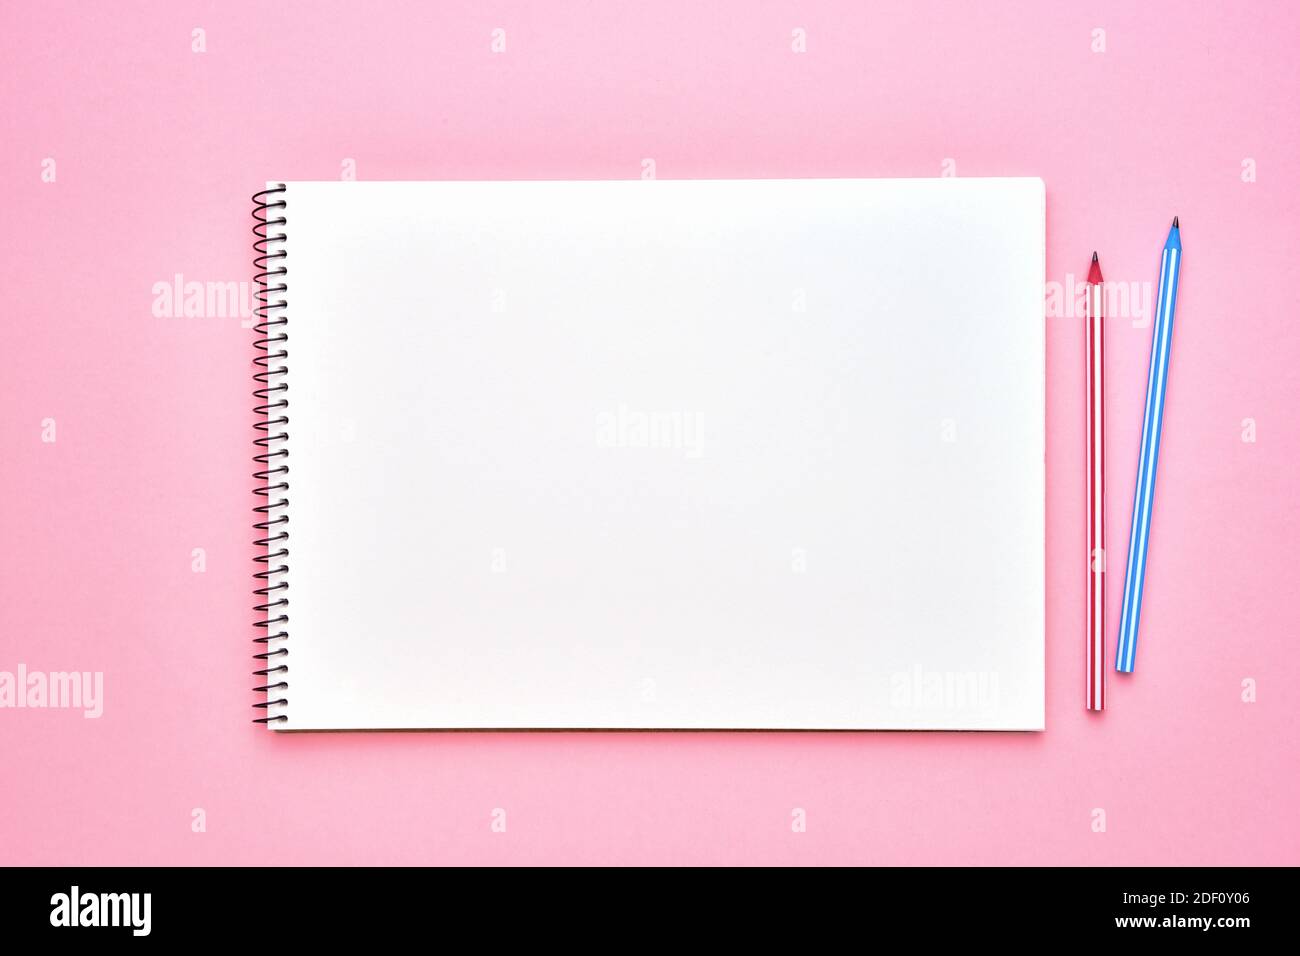 Sổ tay xoắn với bút chì làm mẫu cho thiết kế của bạn sẽ giúp cho bạn hình dung được các ý tưởng thiết kế độc đáo và sáng tạo. Hãy xem ngay để biết cách sử dụng sổ tay xoắn với bút chì làm mẫu cho thiết kế của bạn!